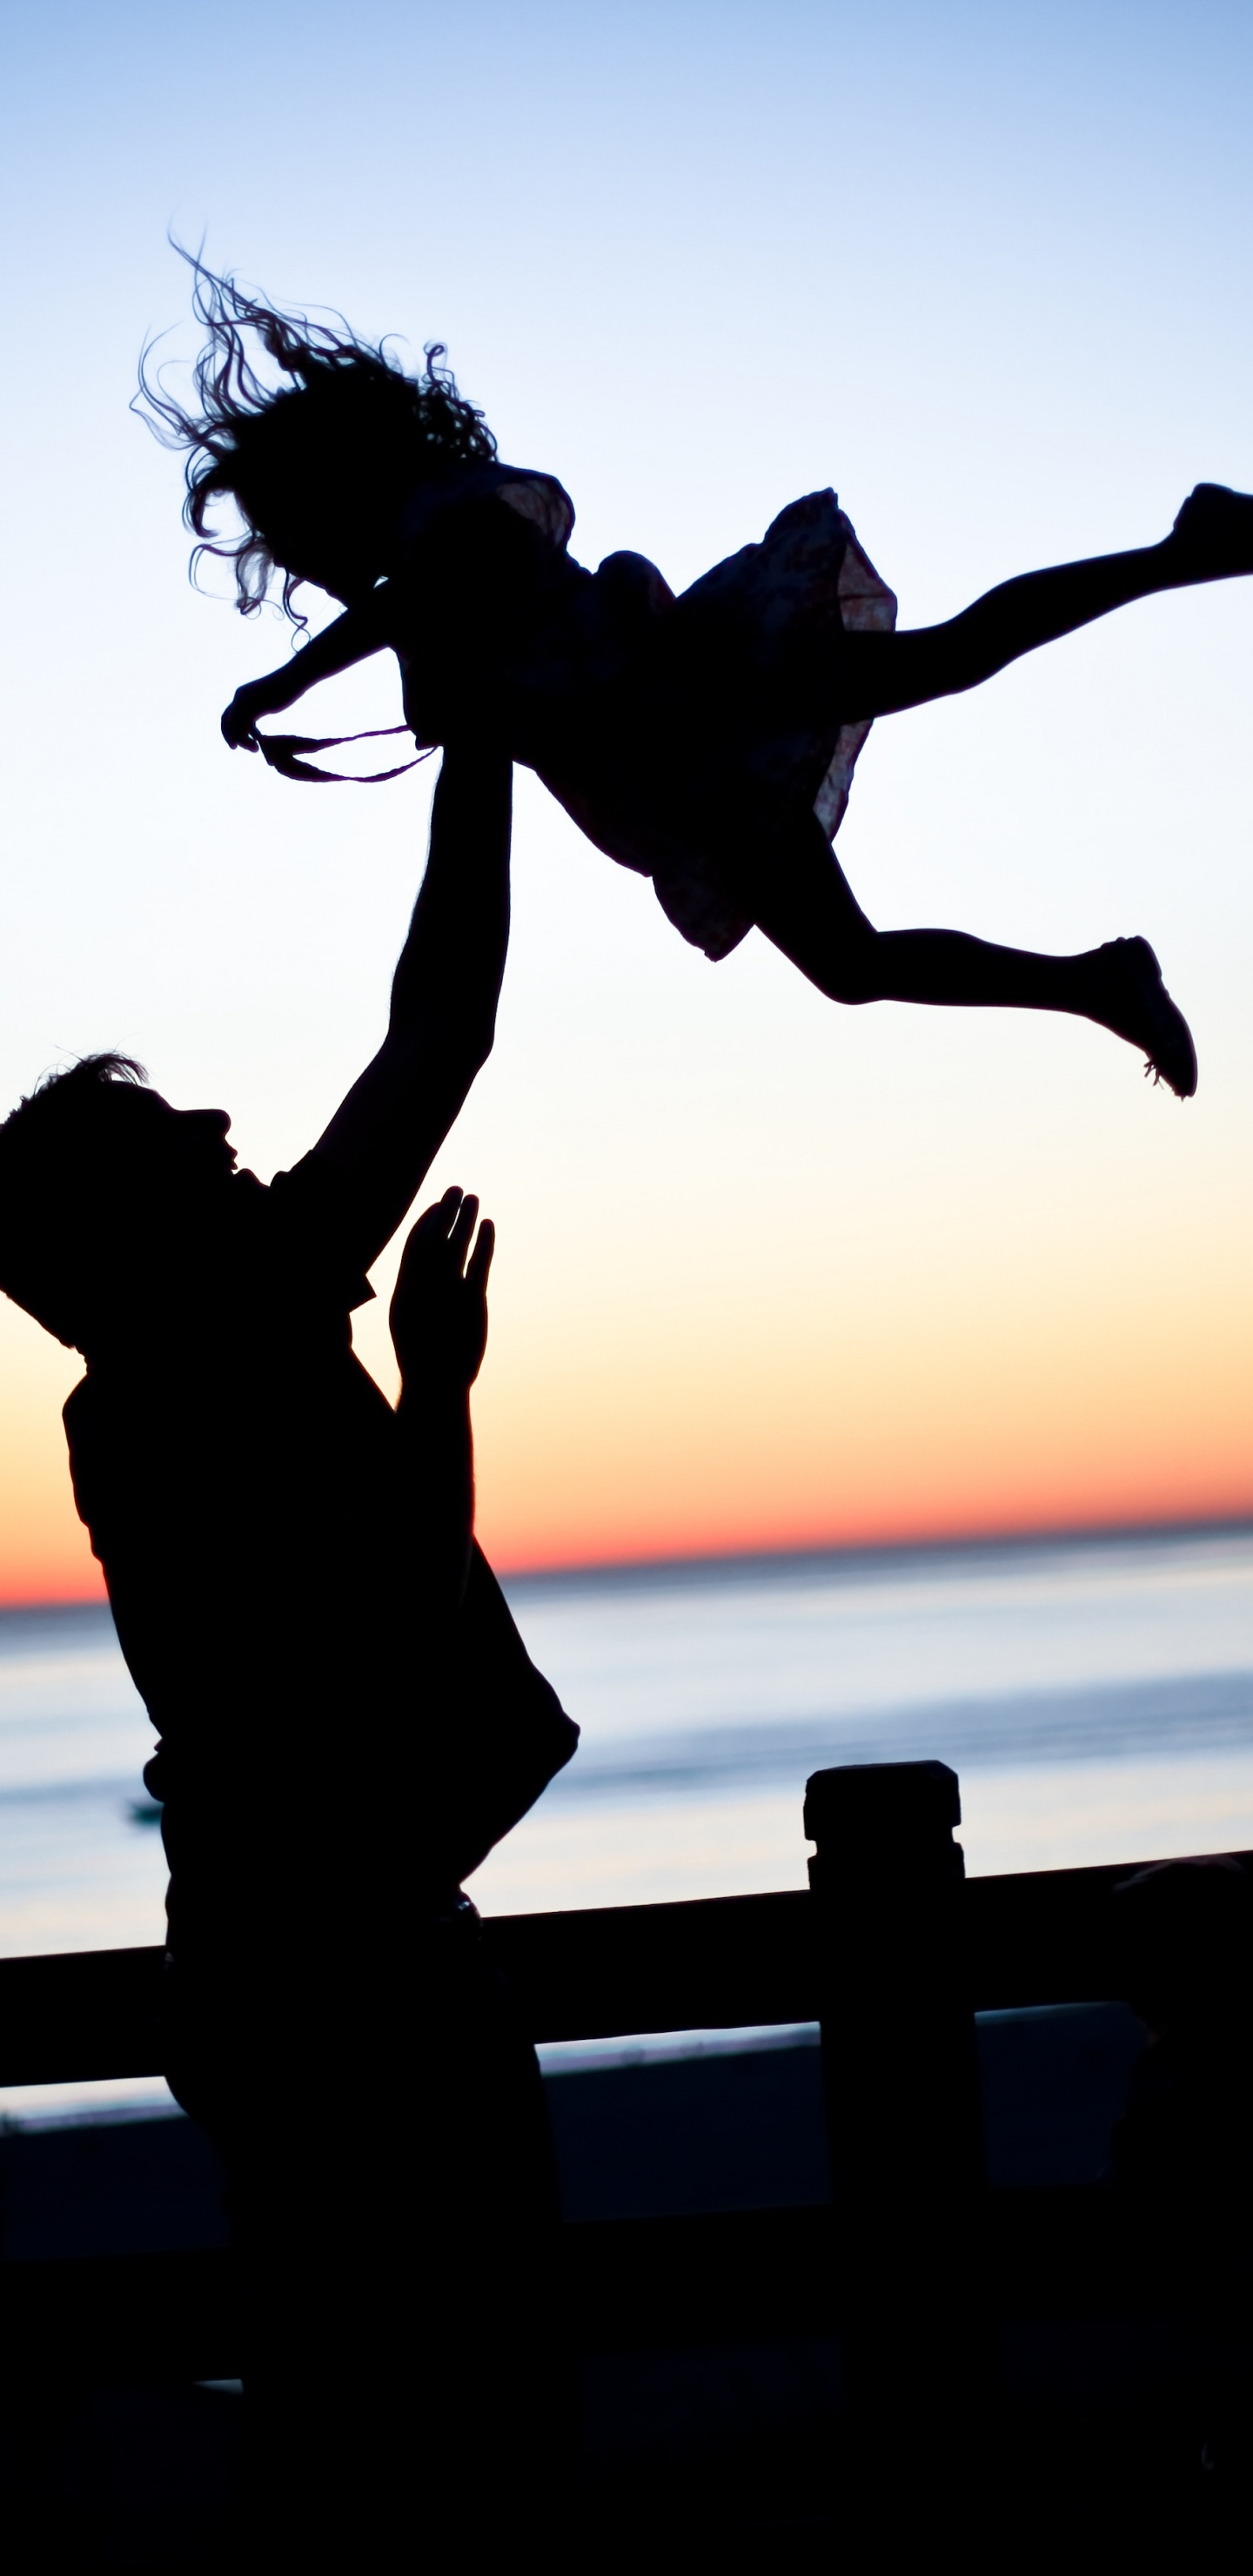 爸爸, 女儿, 家庭, 人们在自然界, 跳跃 壁纸 1440x2960 允许